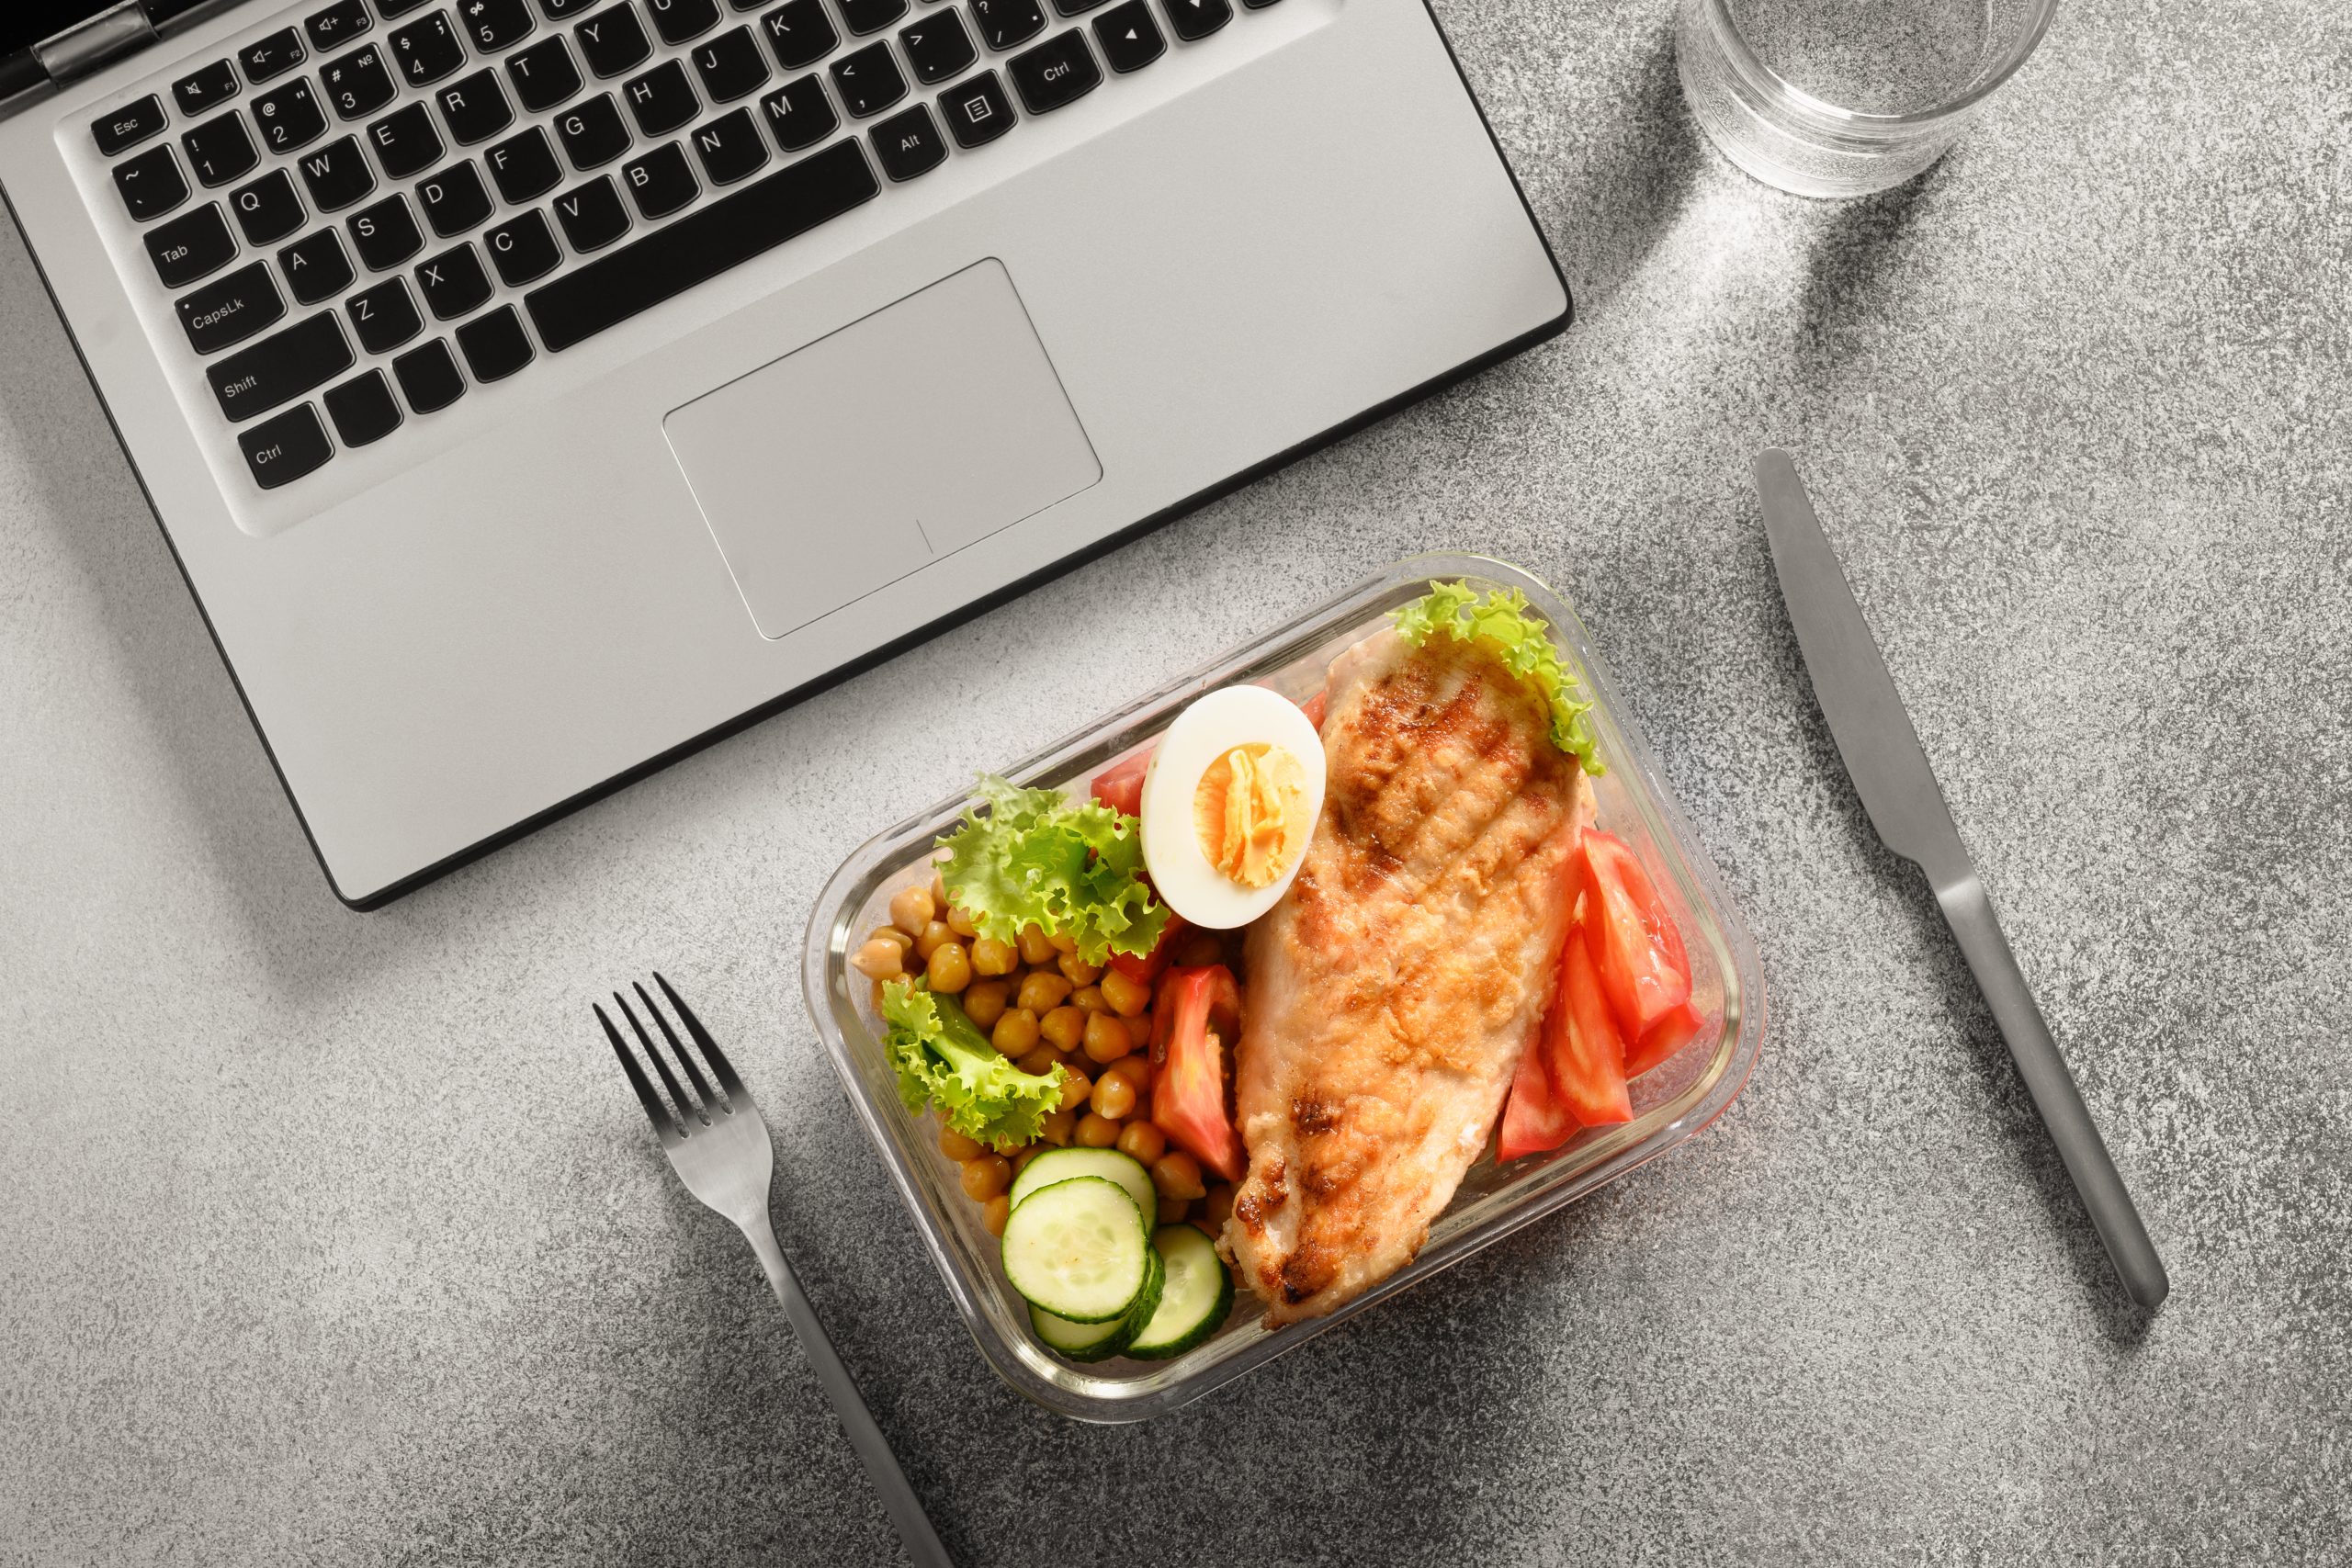 Schnelle und gesunde Ideen für ein proteinreiches Mittagessen – perfekt für arbeitsreiche Tage.